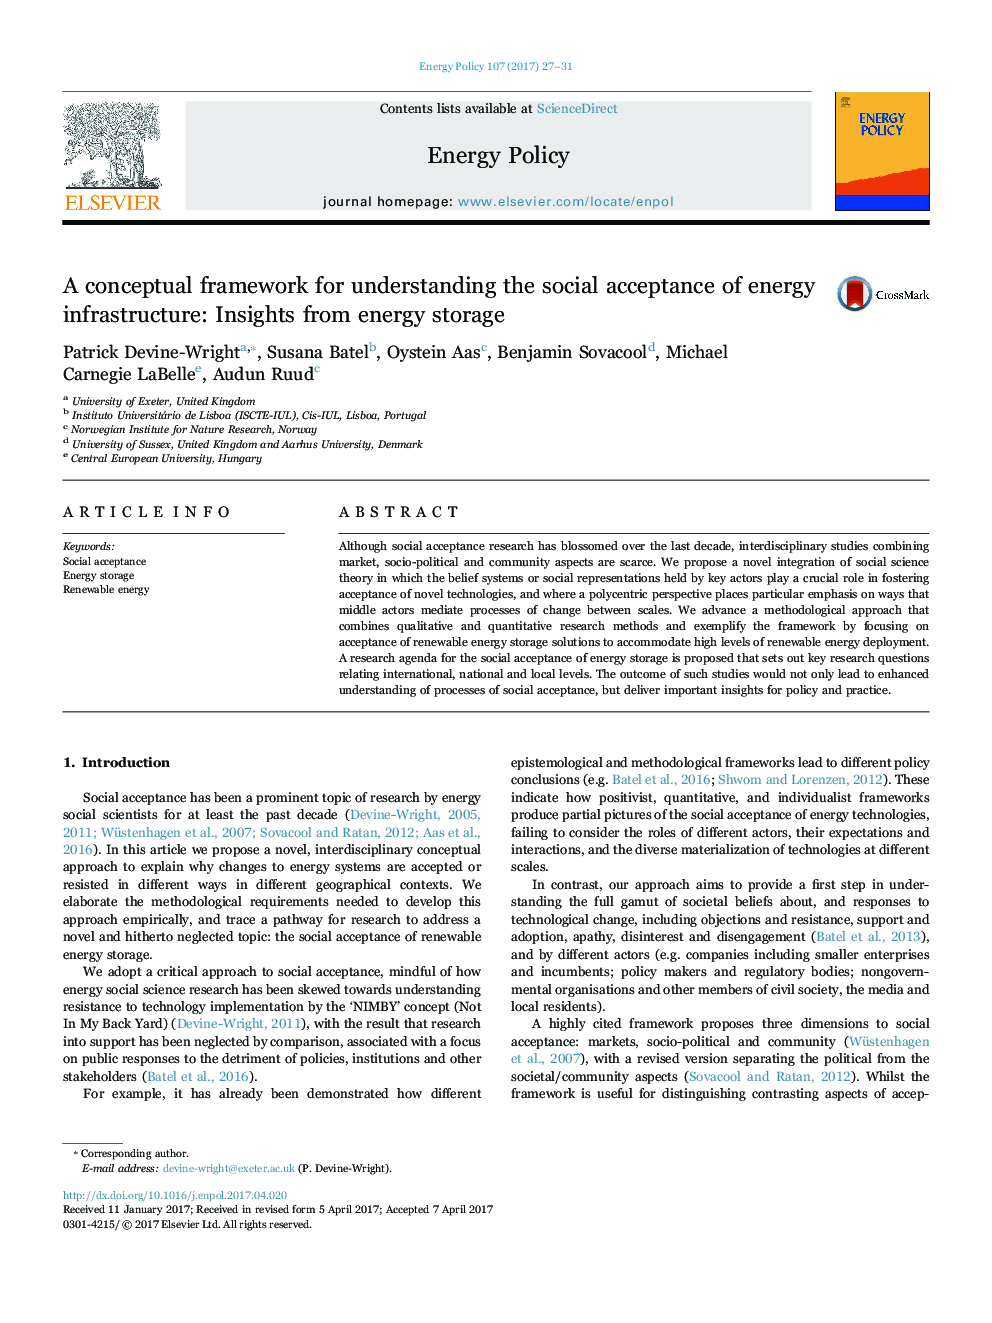 یک چارچوب مفهومی برای درک پذیرش اجتماعی زیربنای انرژی: بینش از ذخیره انرژی 